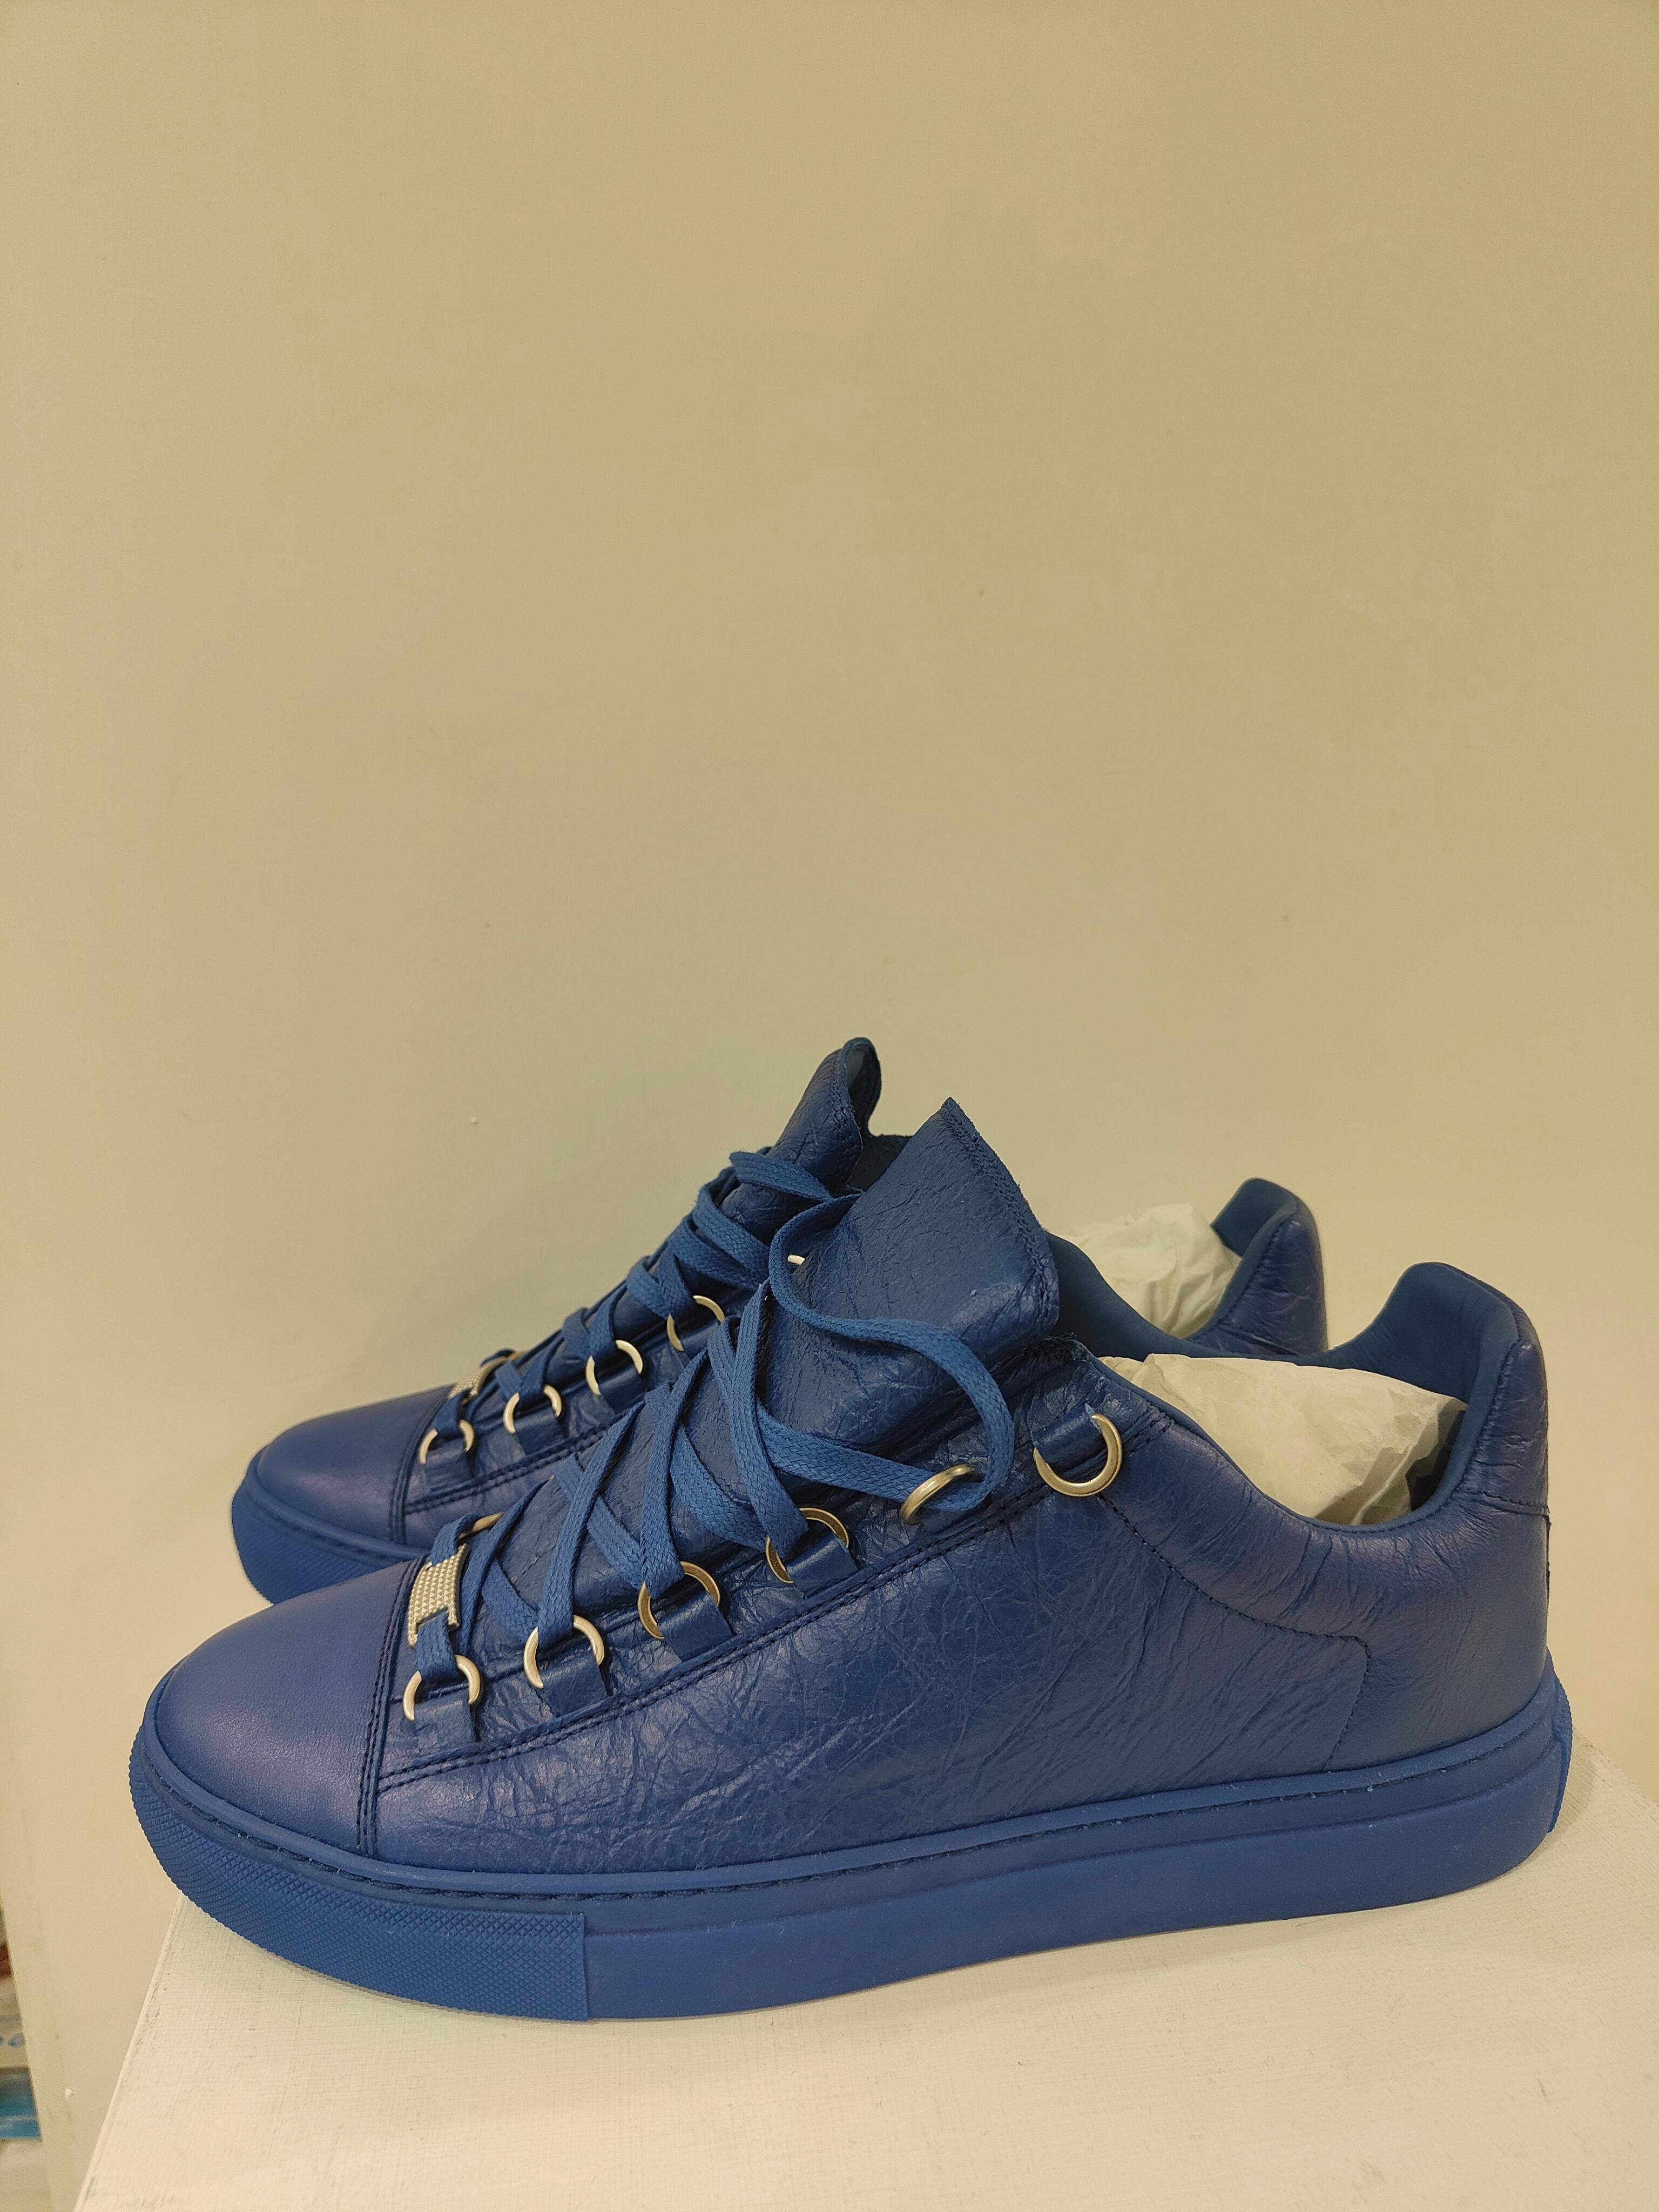 blue balenciaga shoes